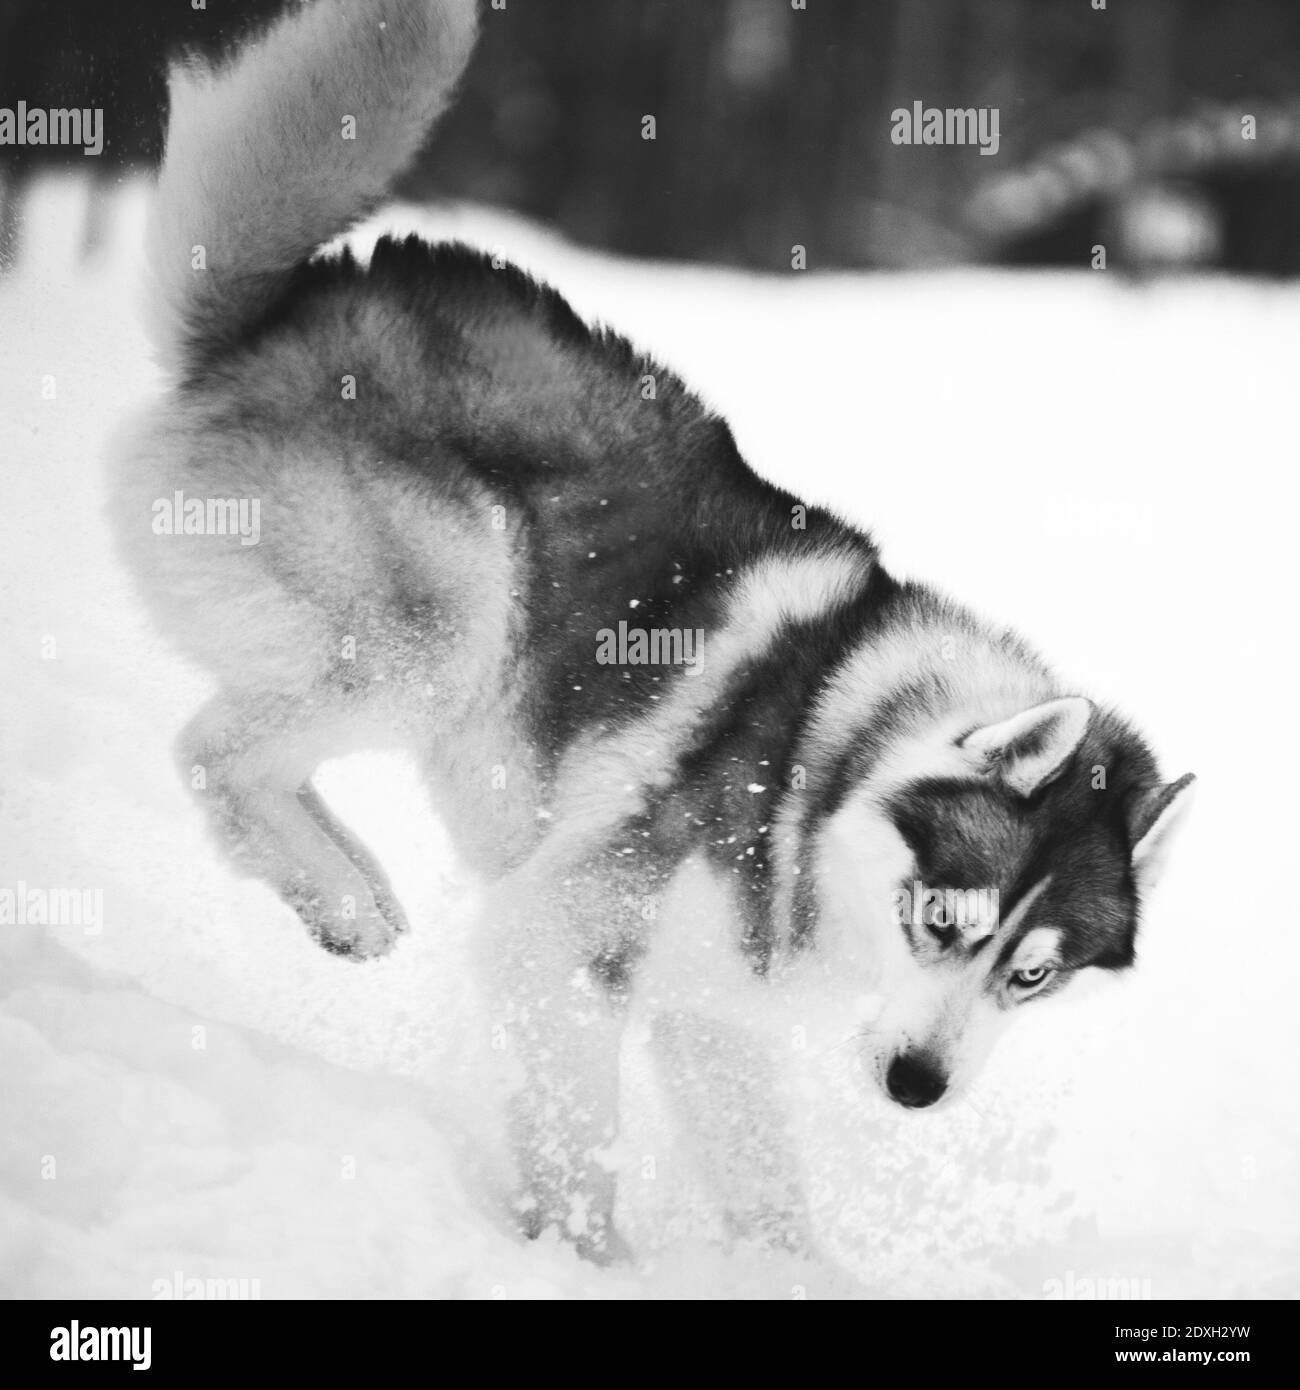 Der grau-weiße blauäugige flauschige Hund der sibirischen Husky züchtet im Winter lustige Spiele und Sprünge auf dem Schnee im Freien. Schwarzweiß-Foto Stockfoto